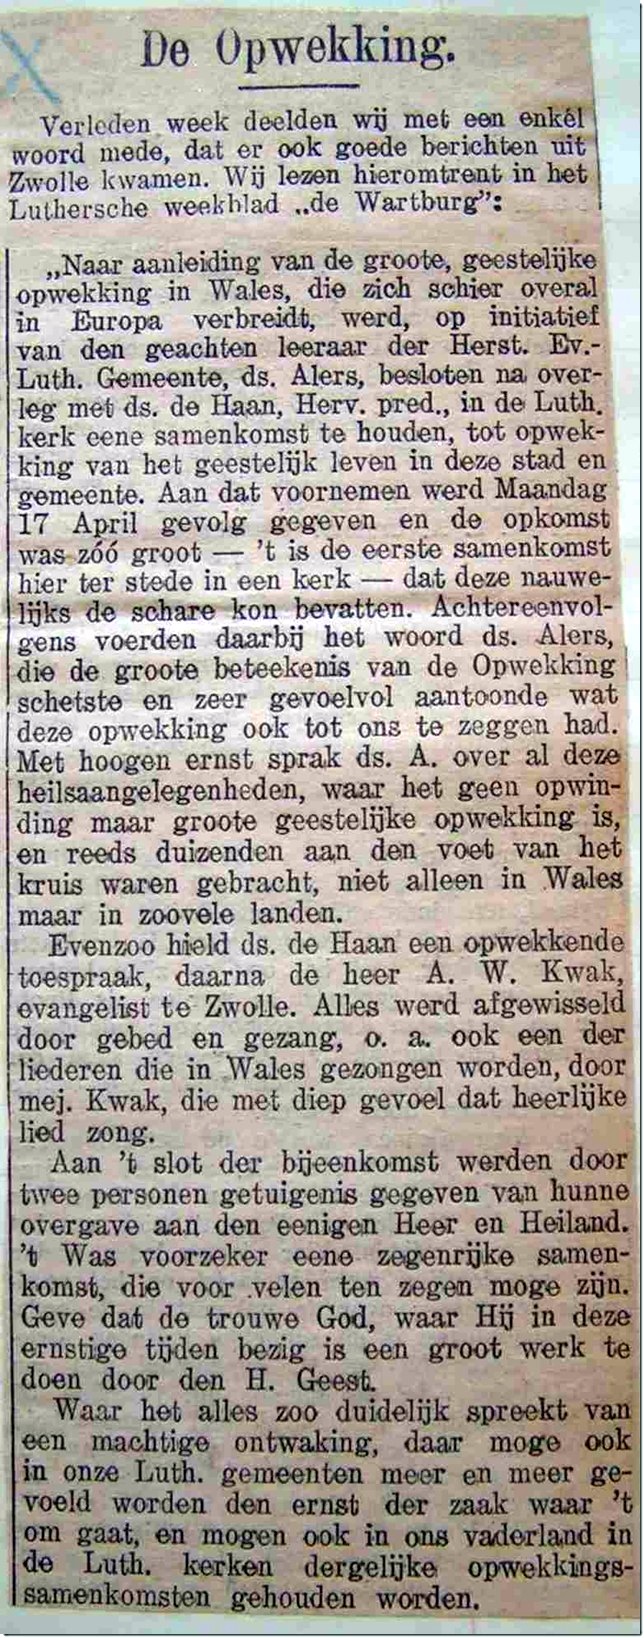 a-022-opwekking-8-mei-1905-zwolle-dronkaards-bidders-a